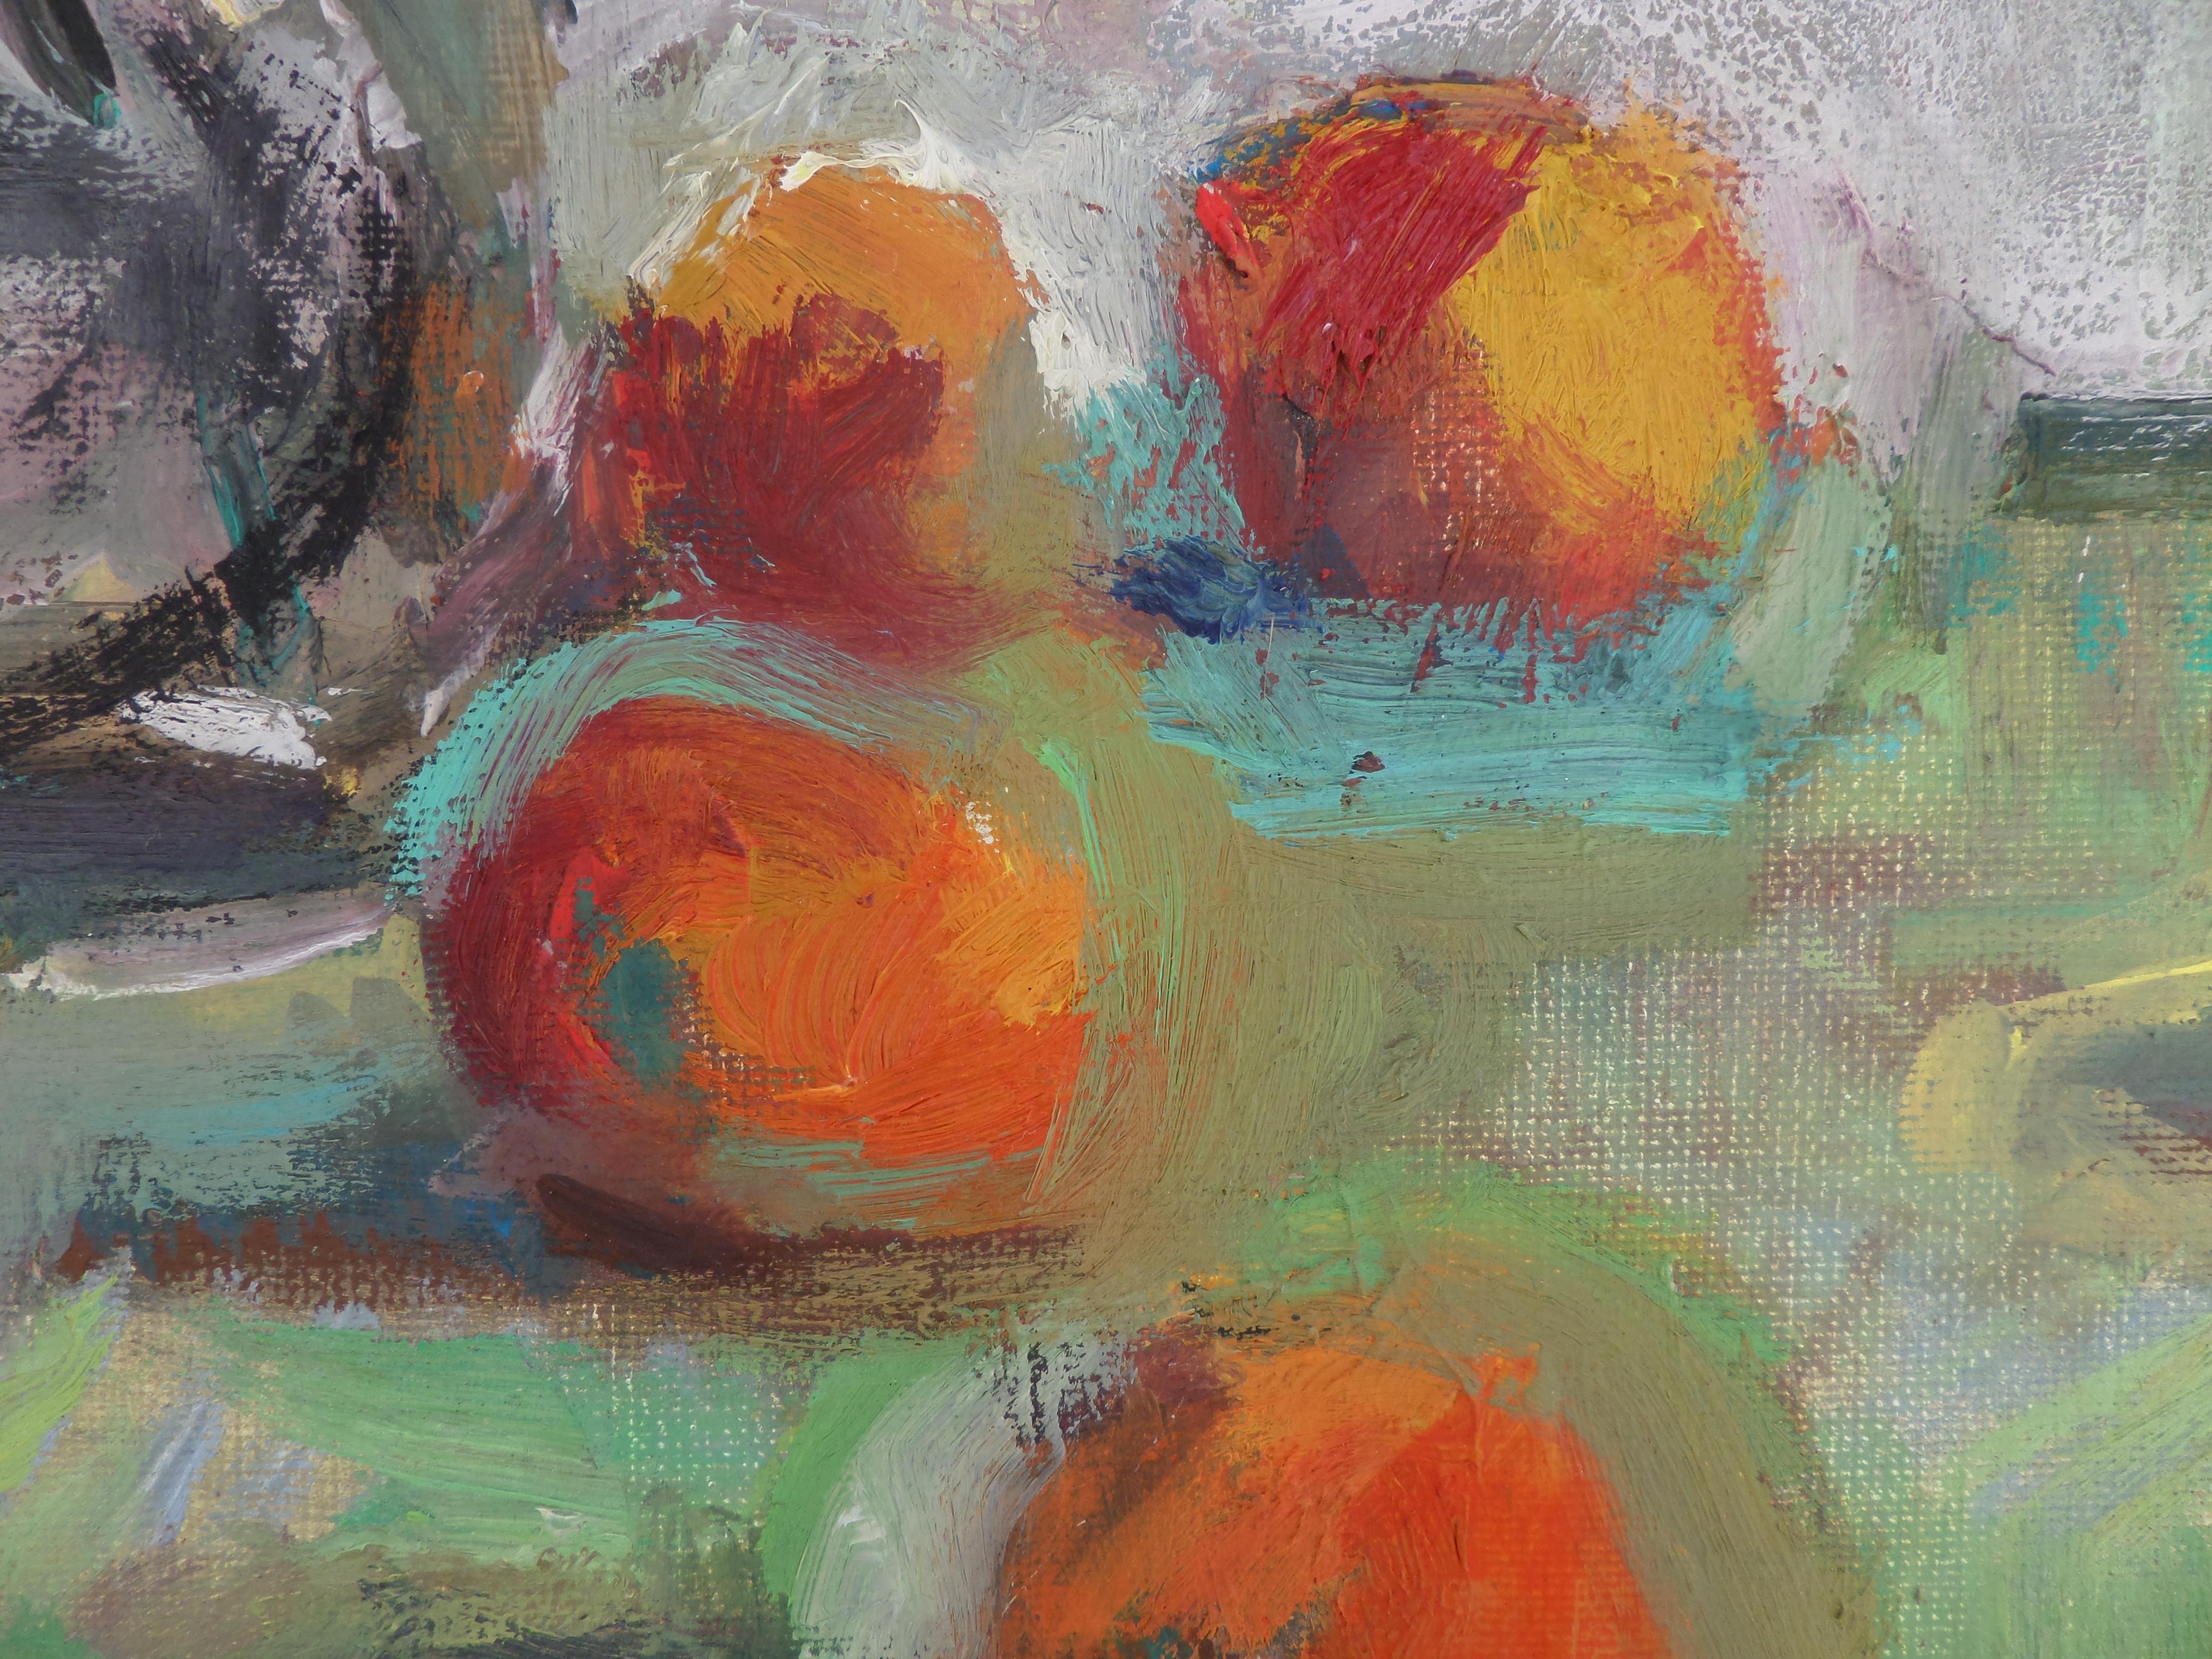 Blumen und Früchte - Stillleben Ölgemälde Grün Rot Weiß Gelb Braun Orange (Impressionismus), Painting, von Ivan Roussev